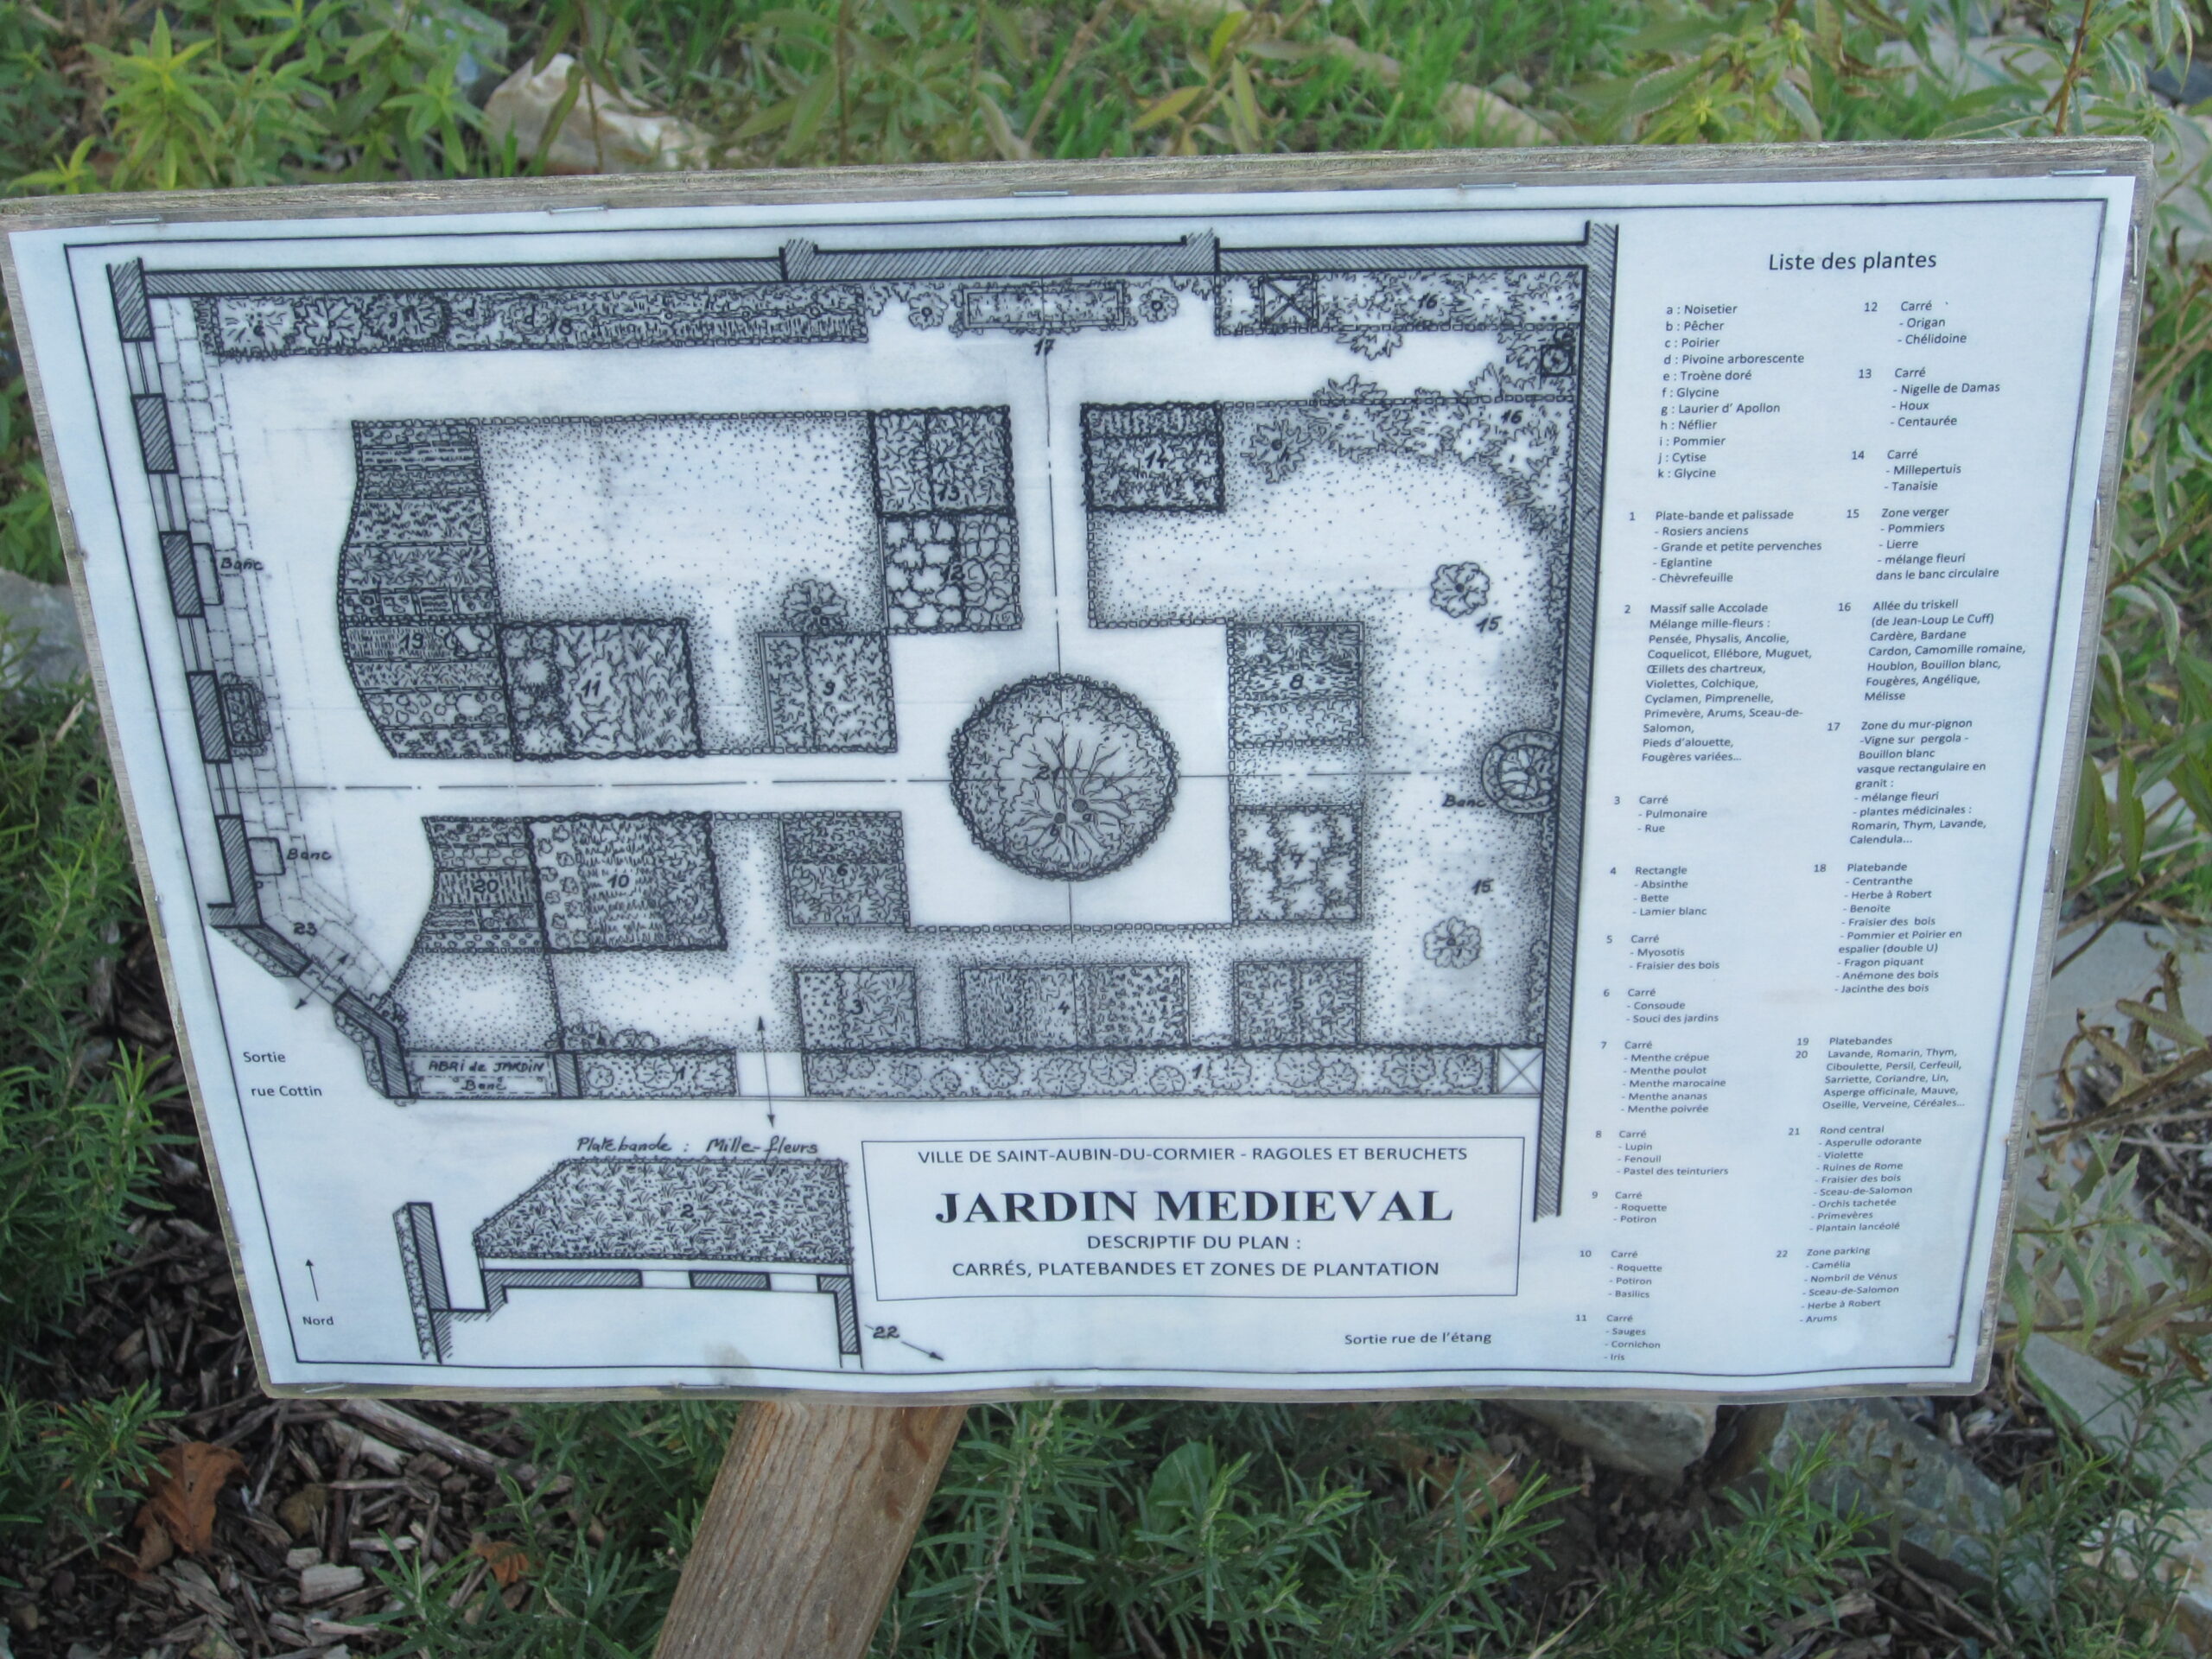 Le jardin médiéval plan historique